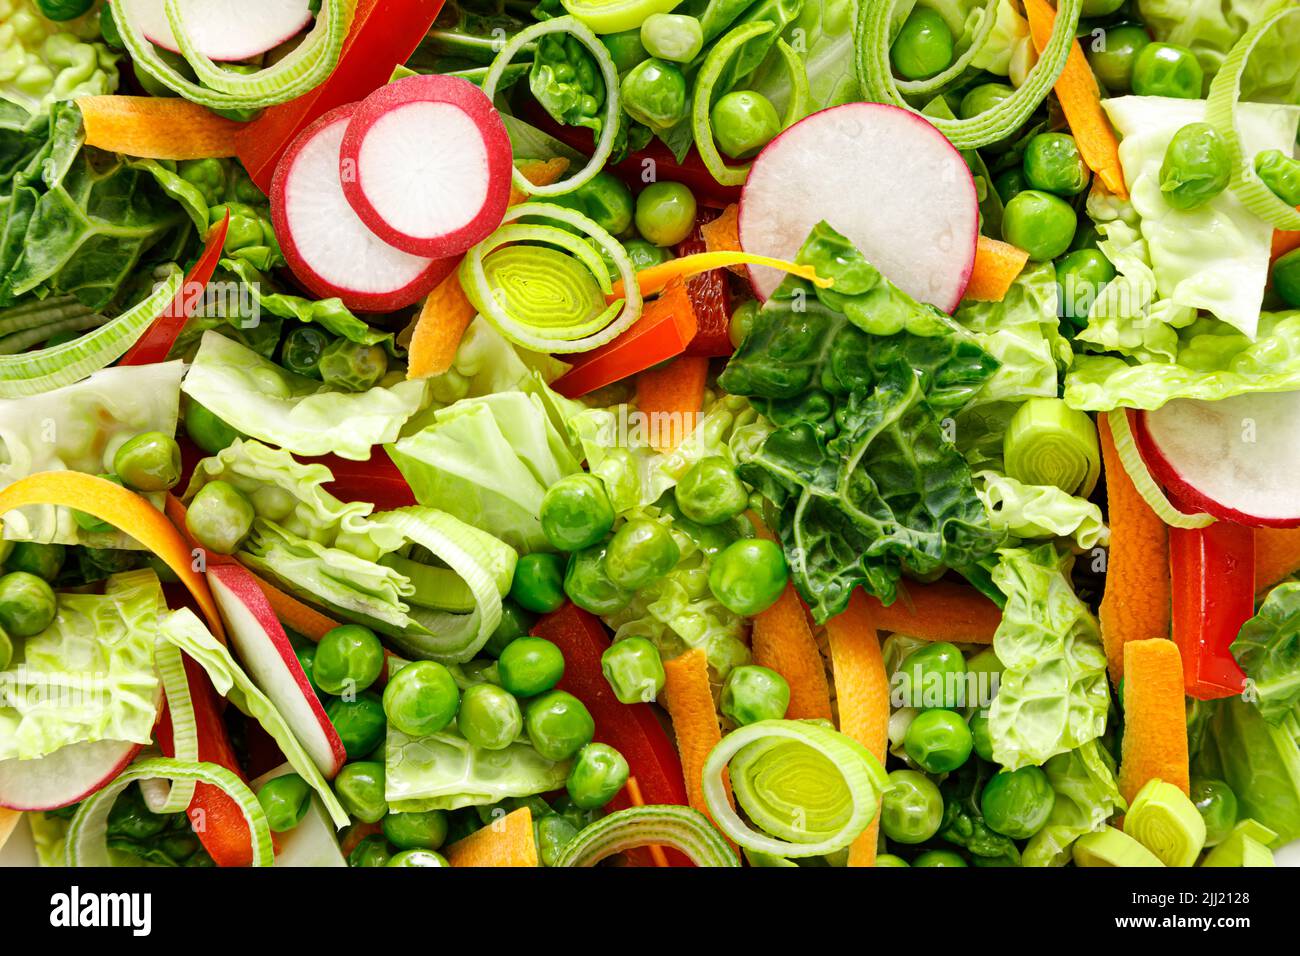 Frischer vegetarischer grüner Salat mit wirsing-Kohl, roher Karotte, Rettich, Paprika, Lauch und grünen Erbsen Stockfoto